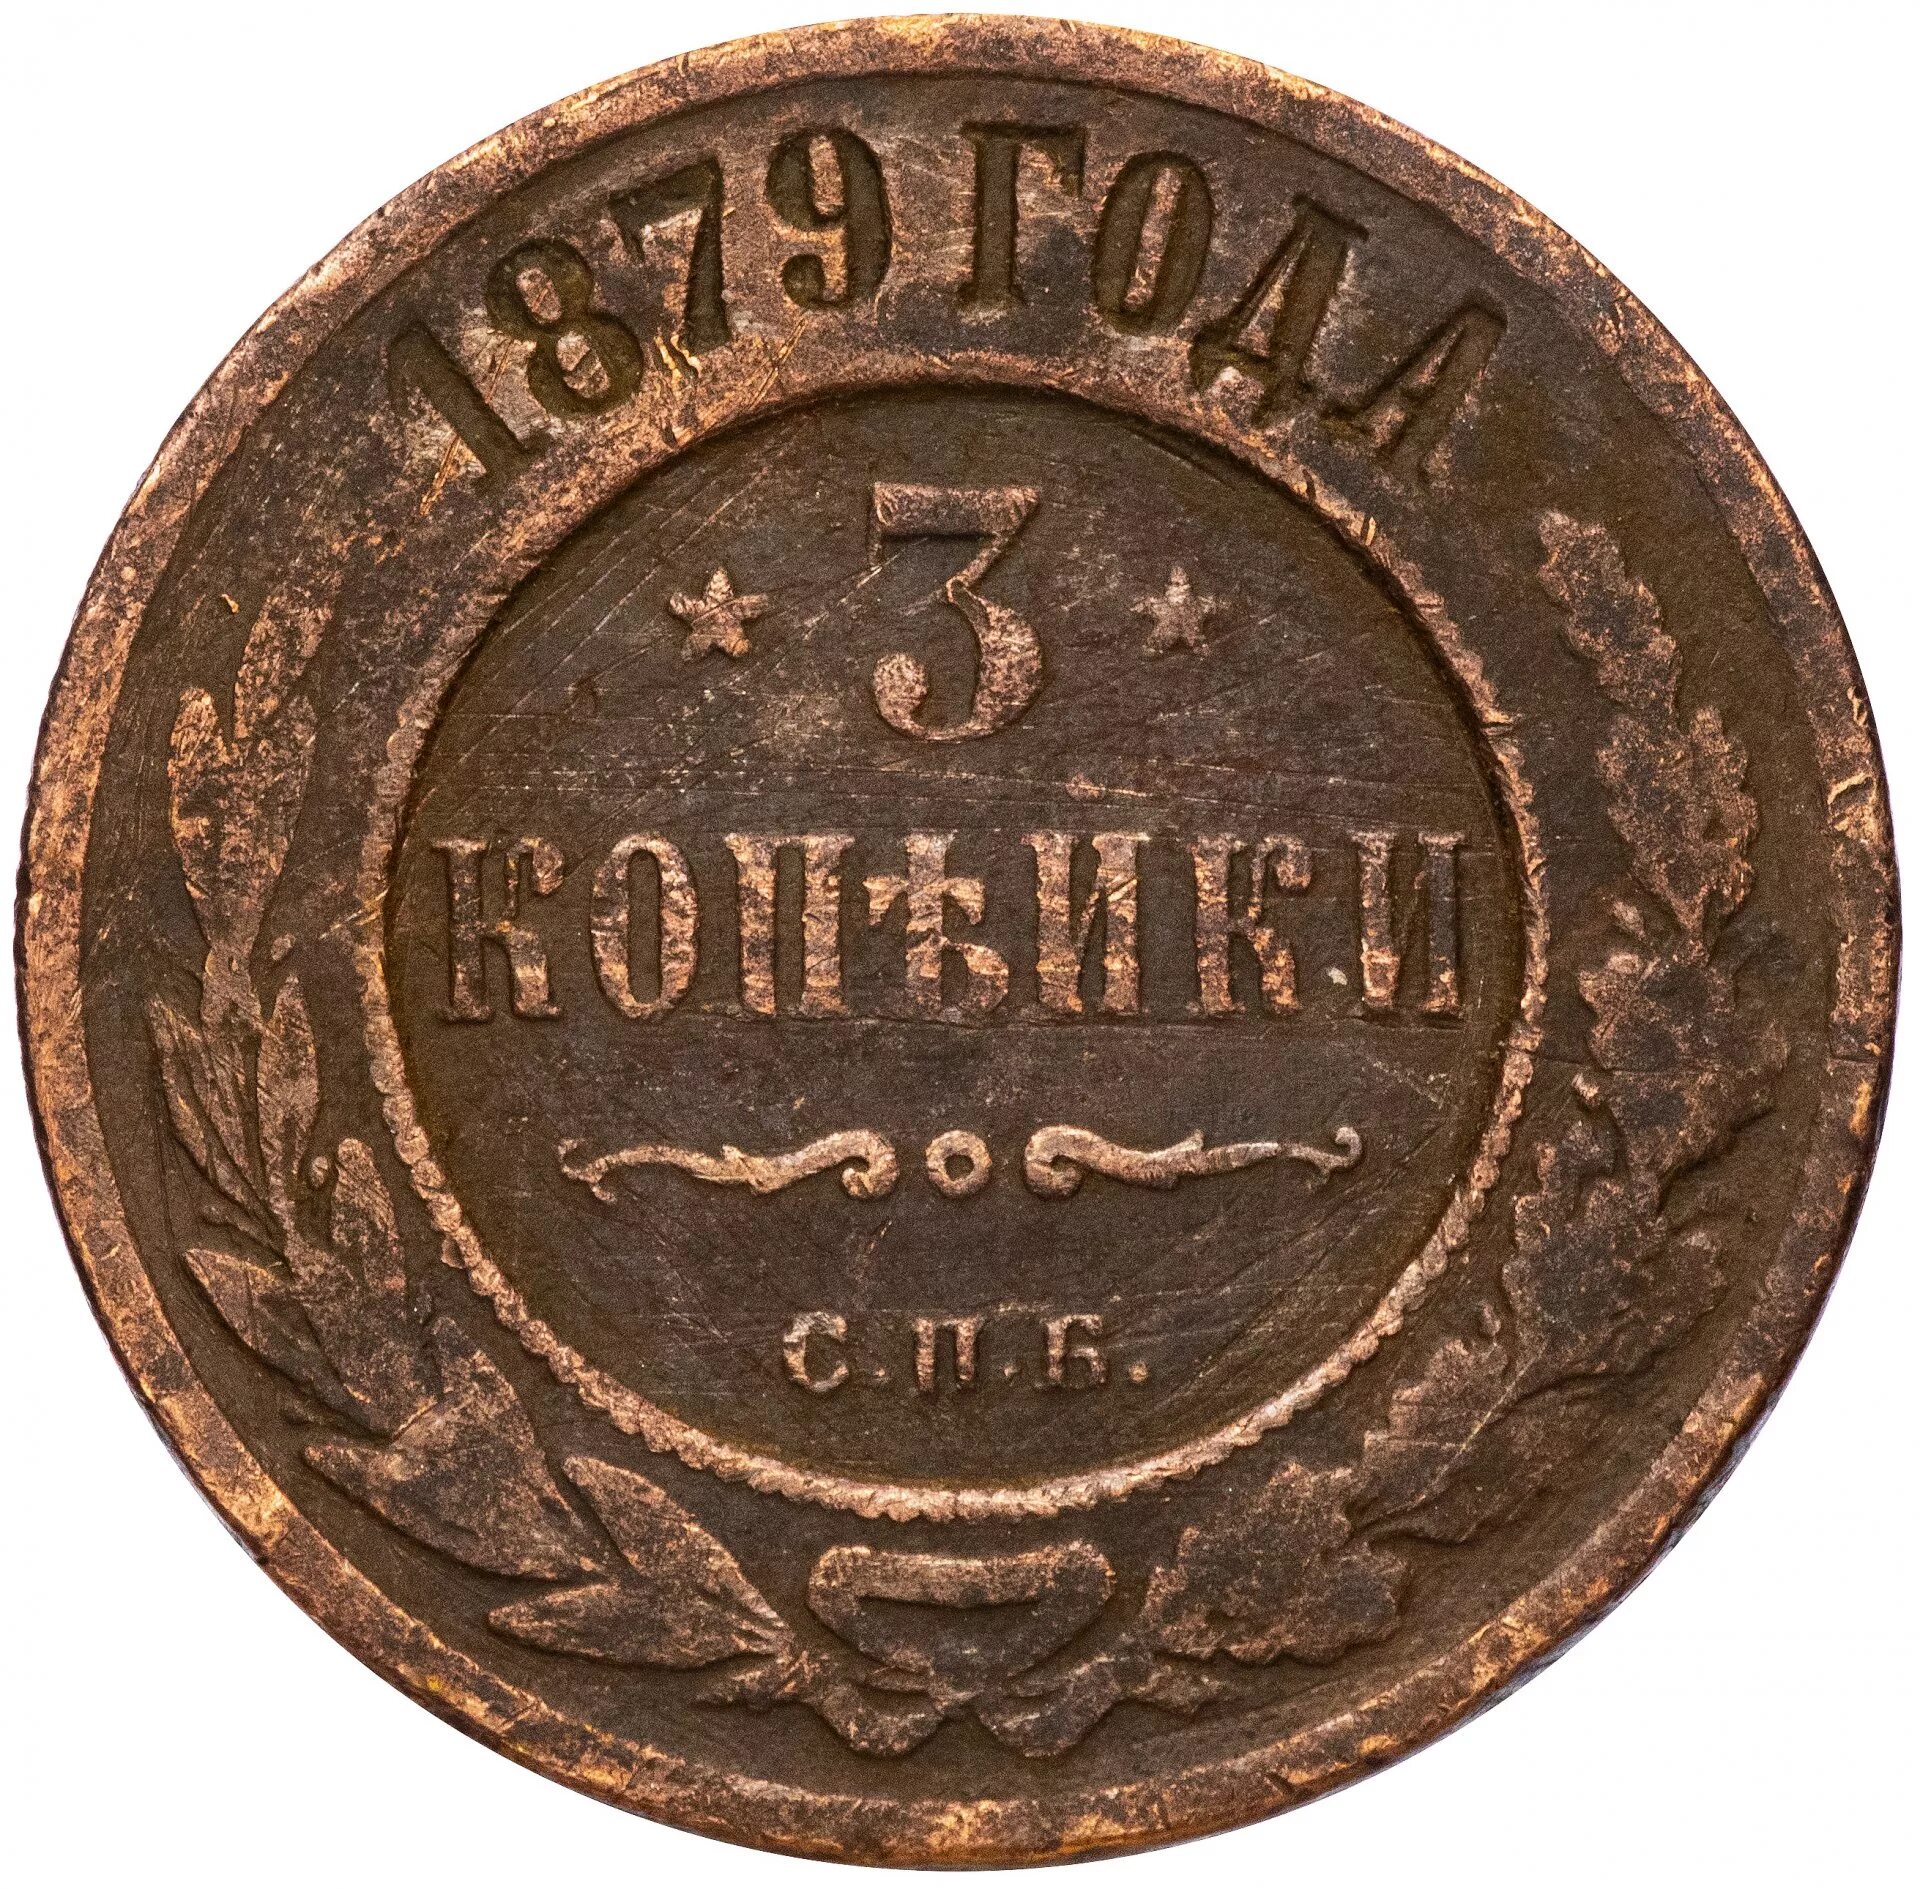 Три копейки получать. 3 Копейки 1879 года. Монета Царская 2 копейки 1879г. Медная монета 1879 года.